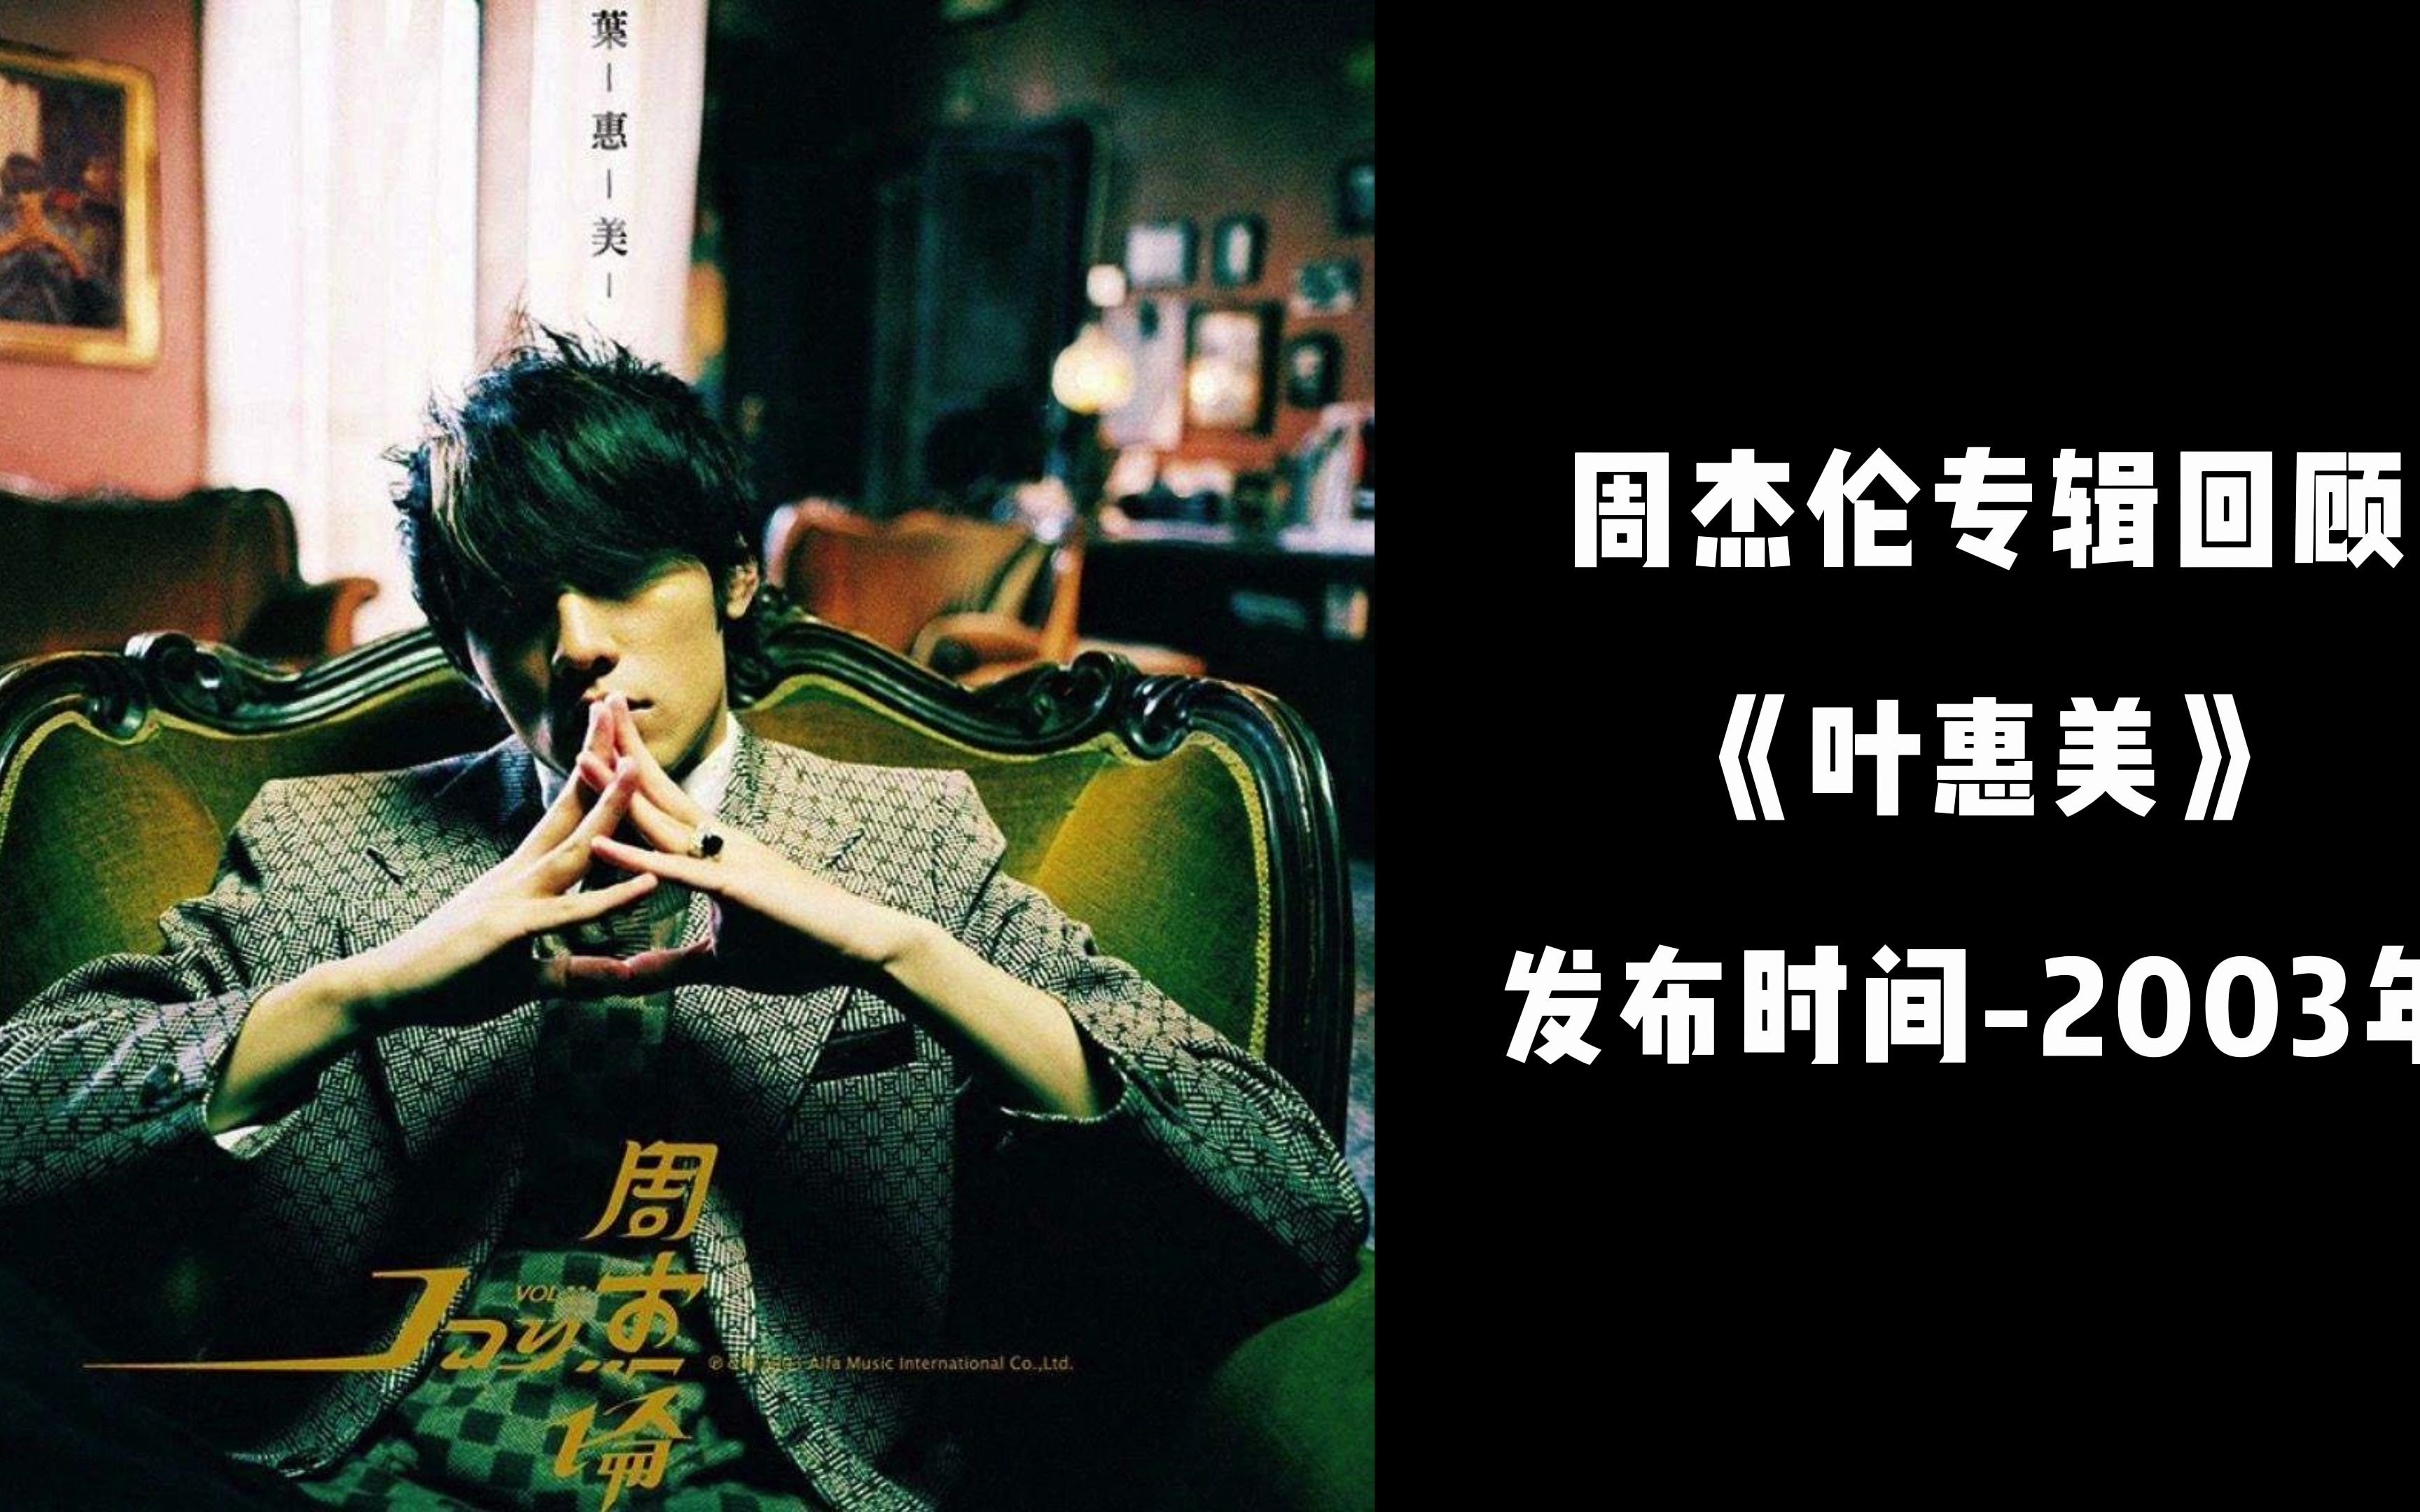 叶惠美专辑封面 壁纸图片